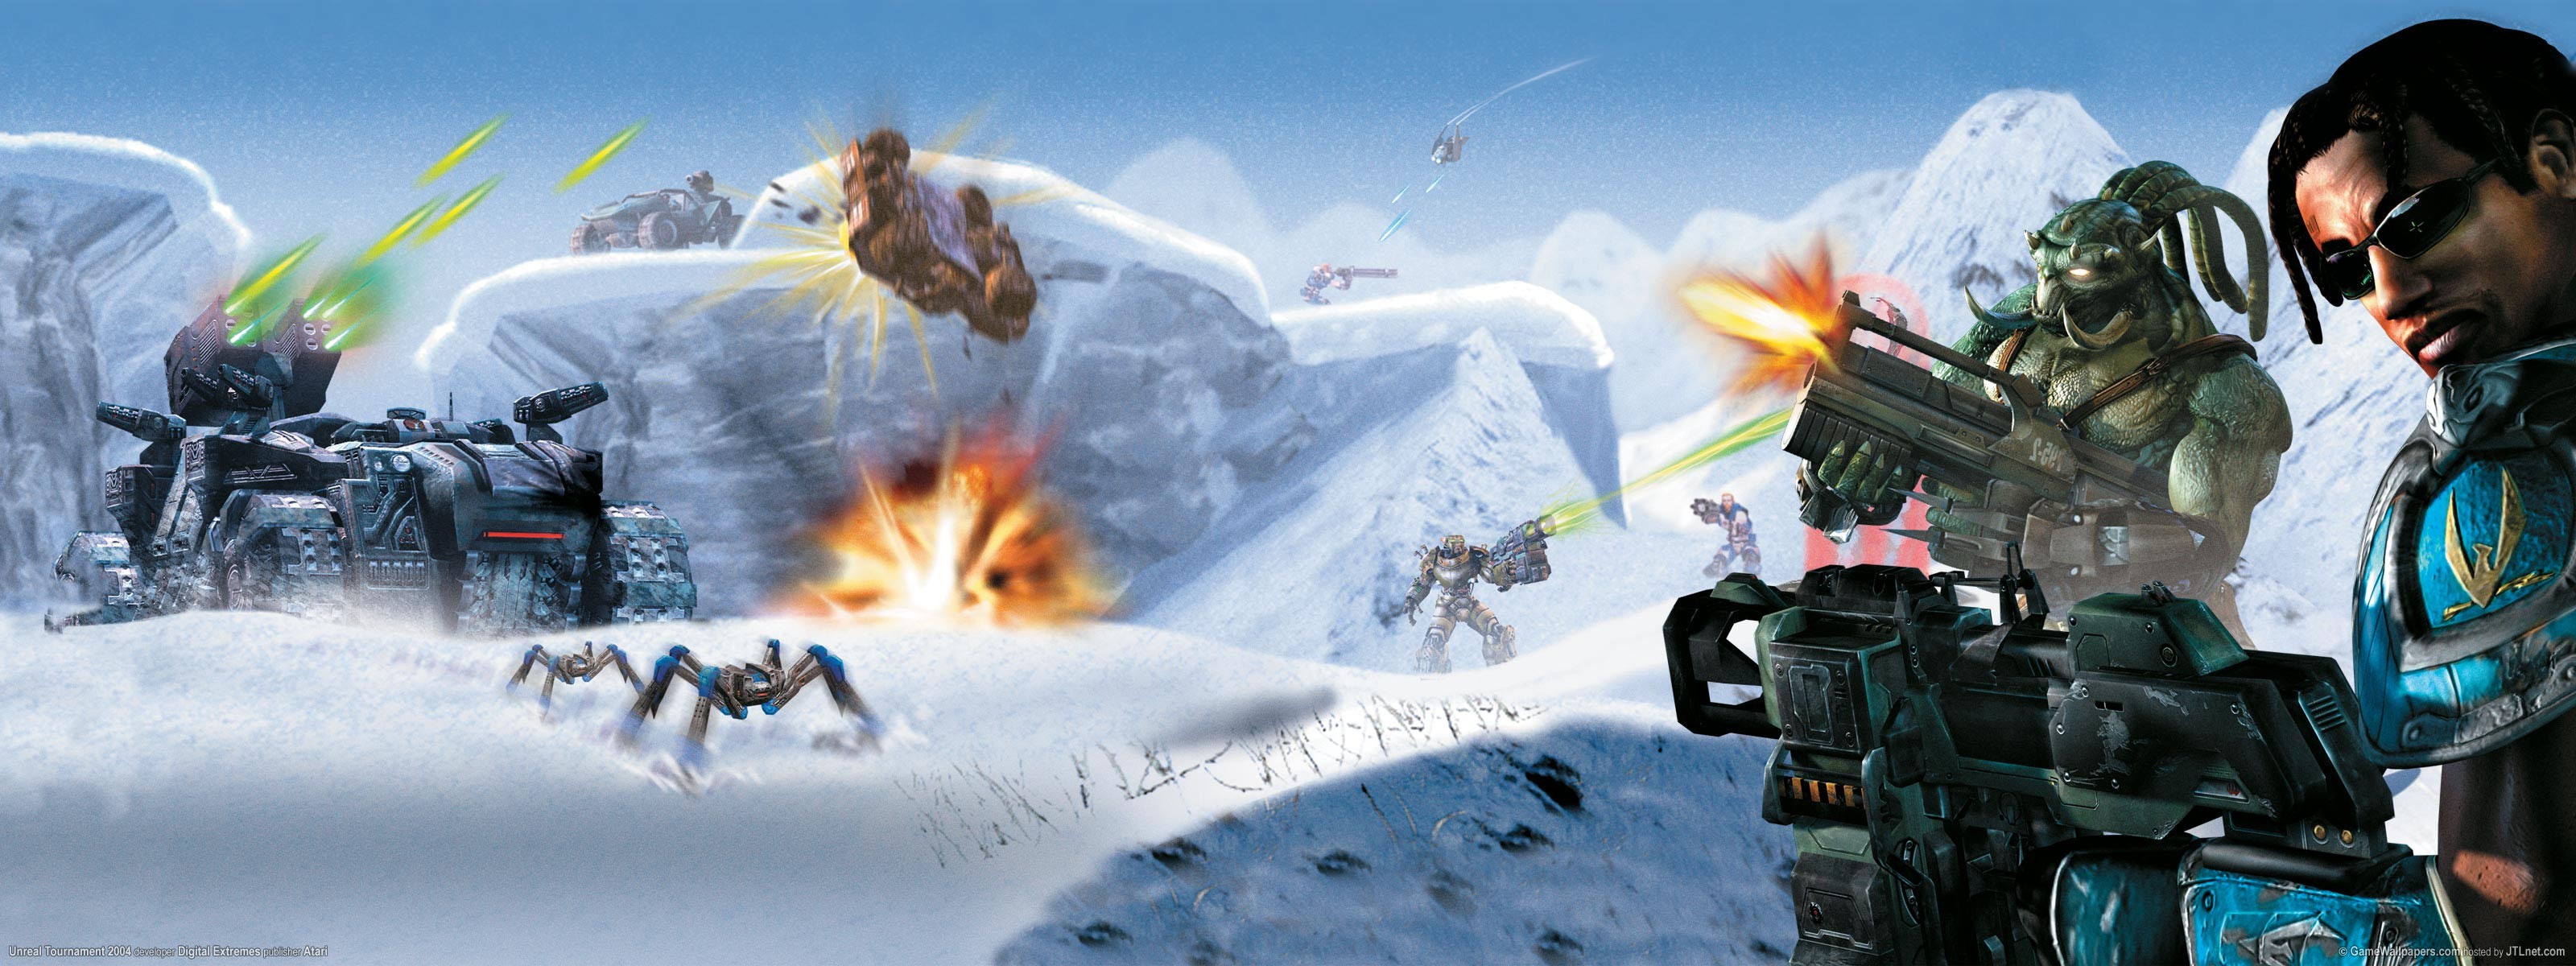 Unreal Tournament 2004 Video Games Artwork Unreal Tournament Science Fiction Battle 3200x1200